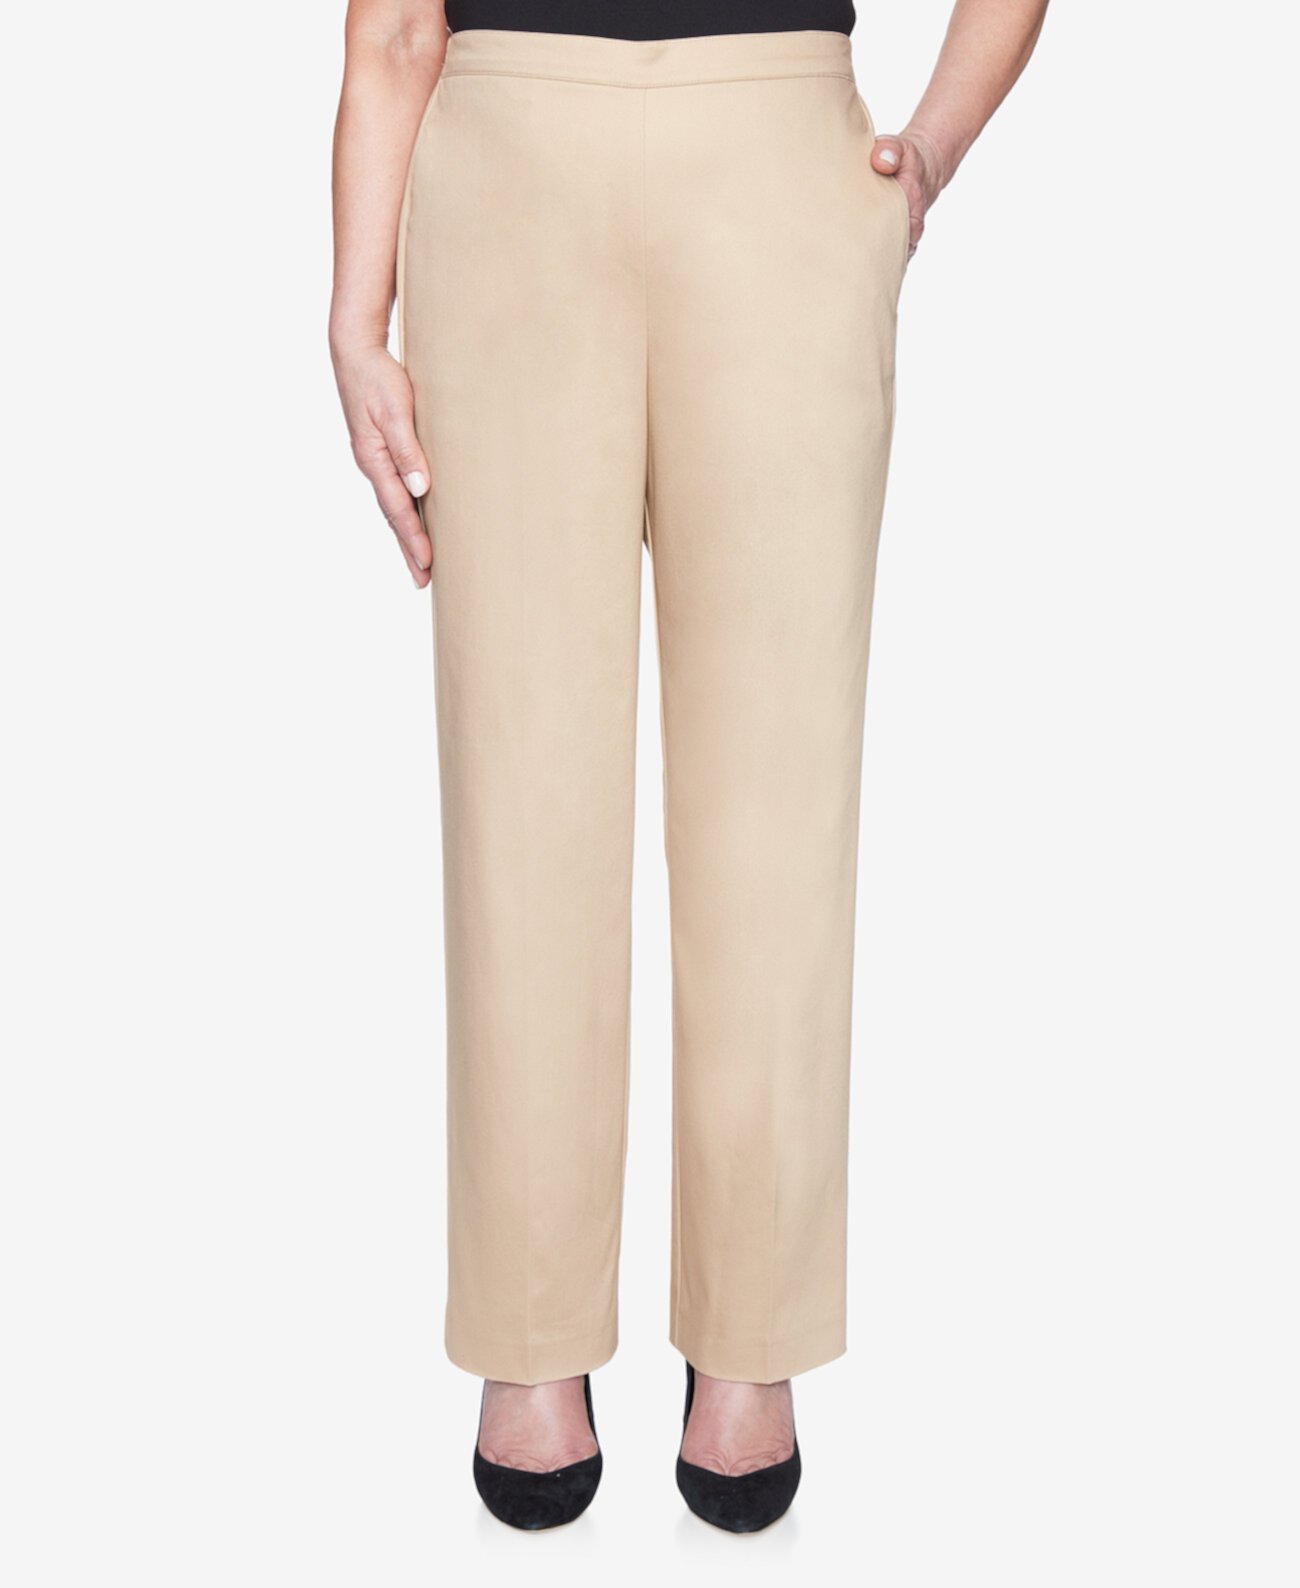 Плюс размер потяните на спине эластичный сатин пропорционально короткие брюки Alfred Dunner